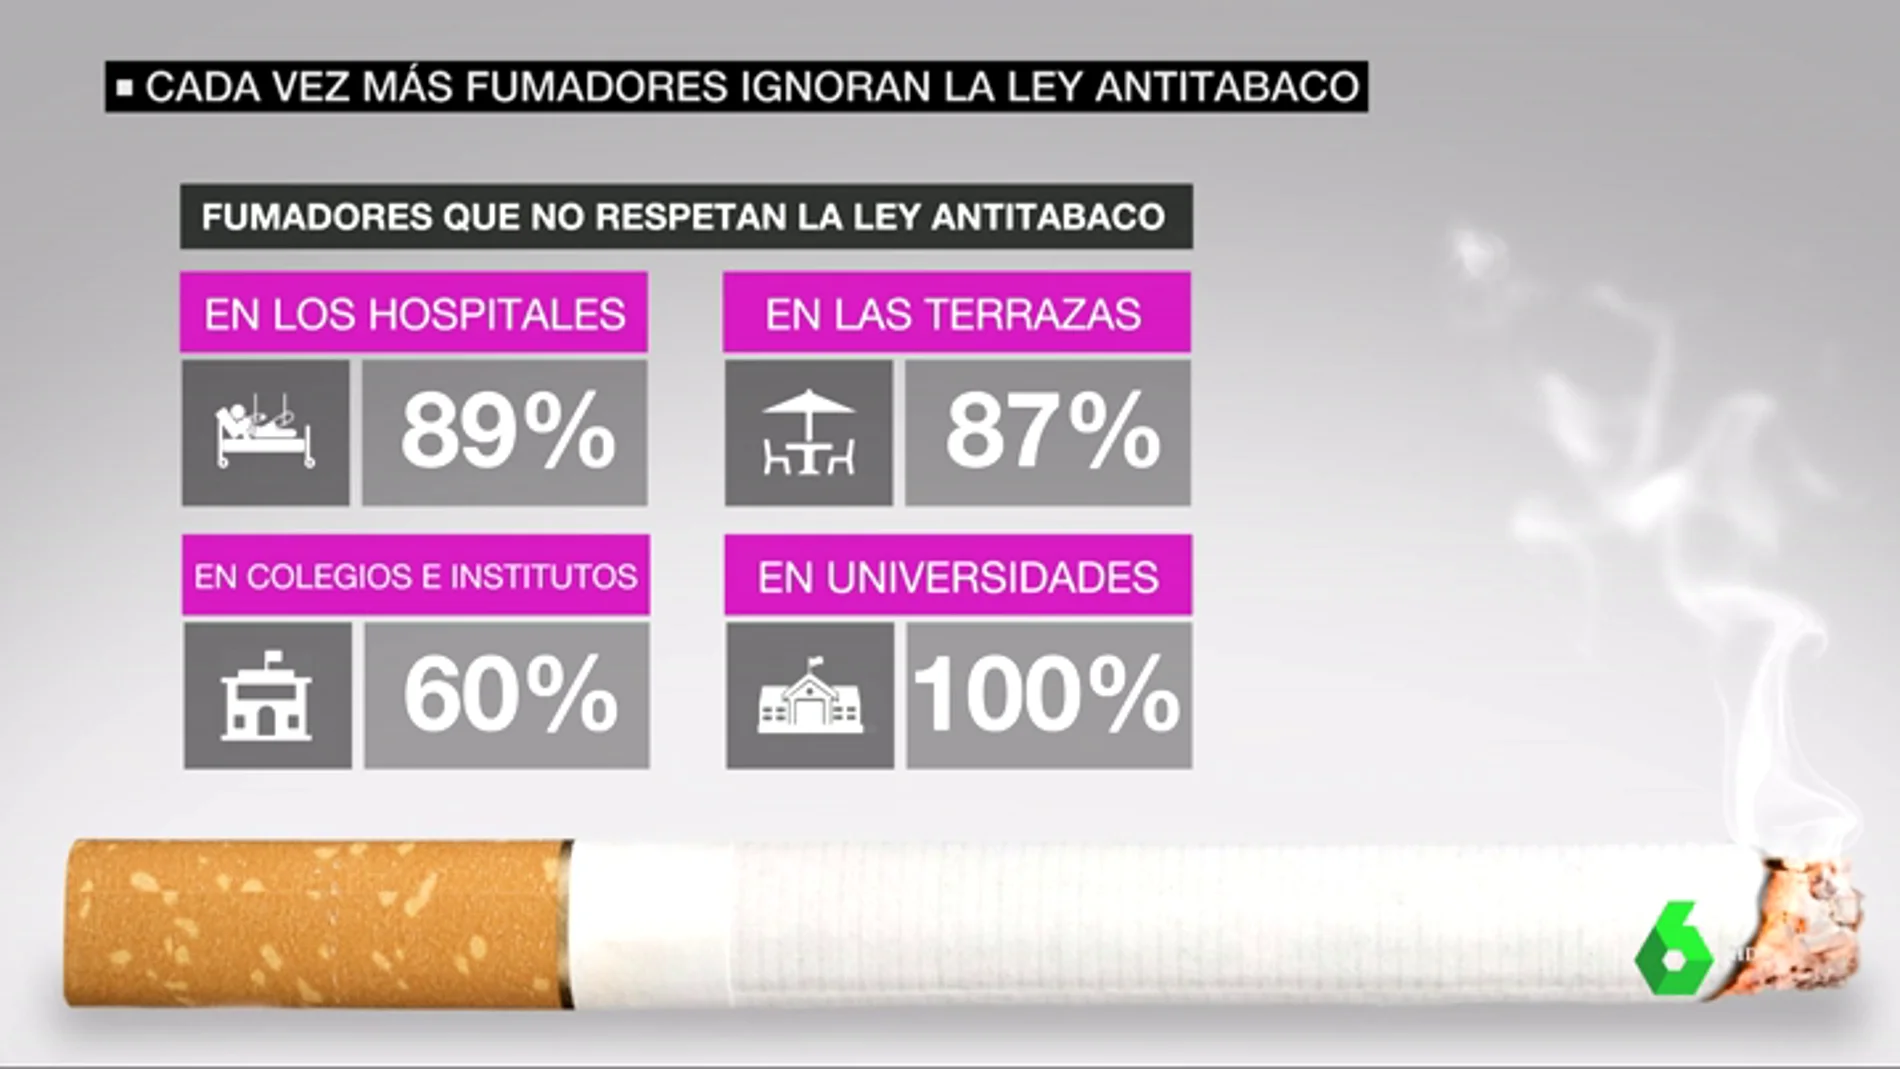 Fumadores que no respetan la ley Antitabaco